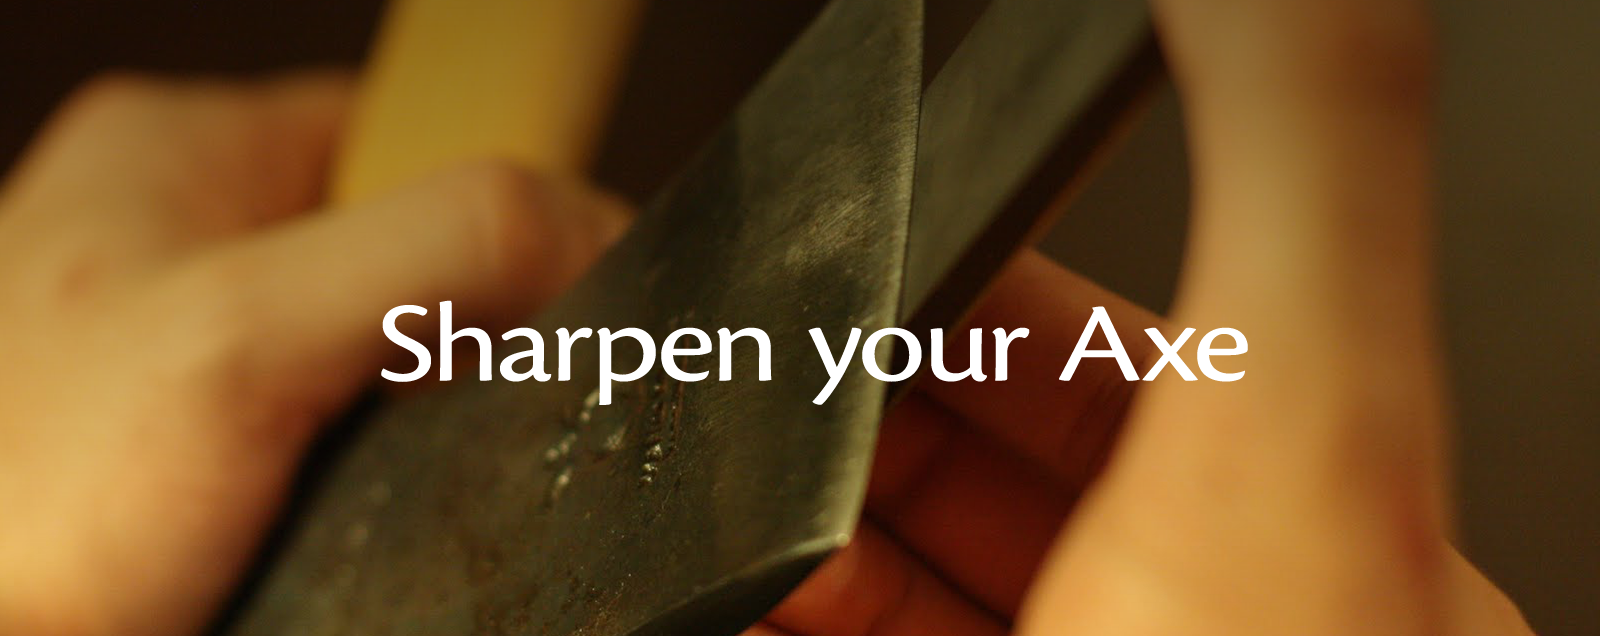 sharpen-your-axe